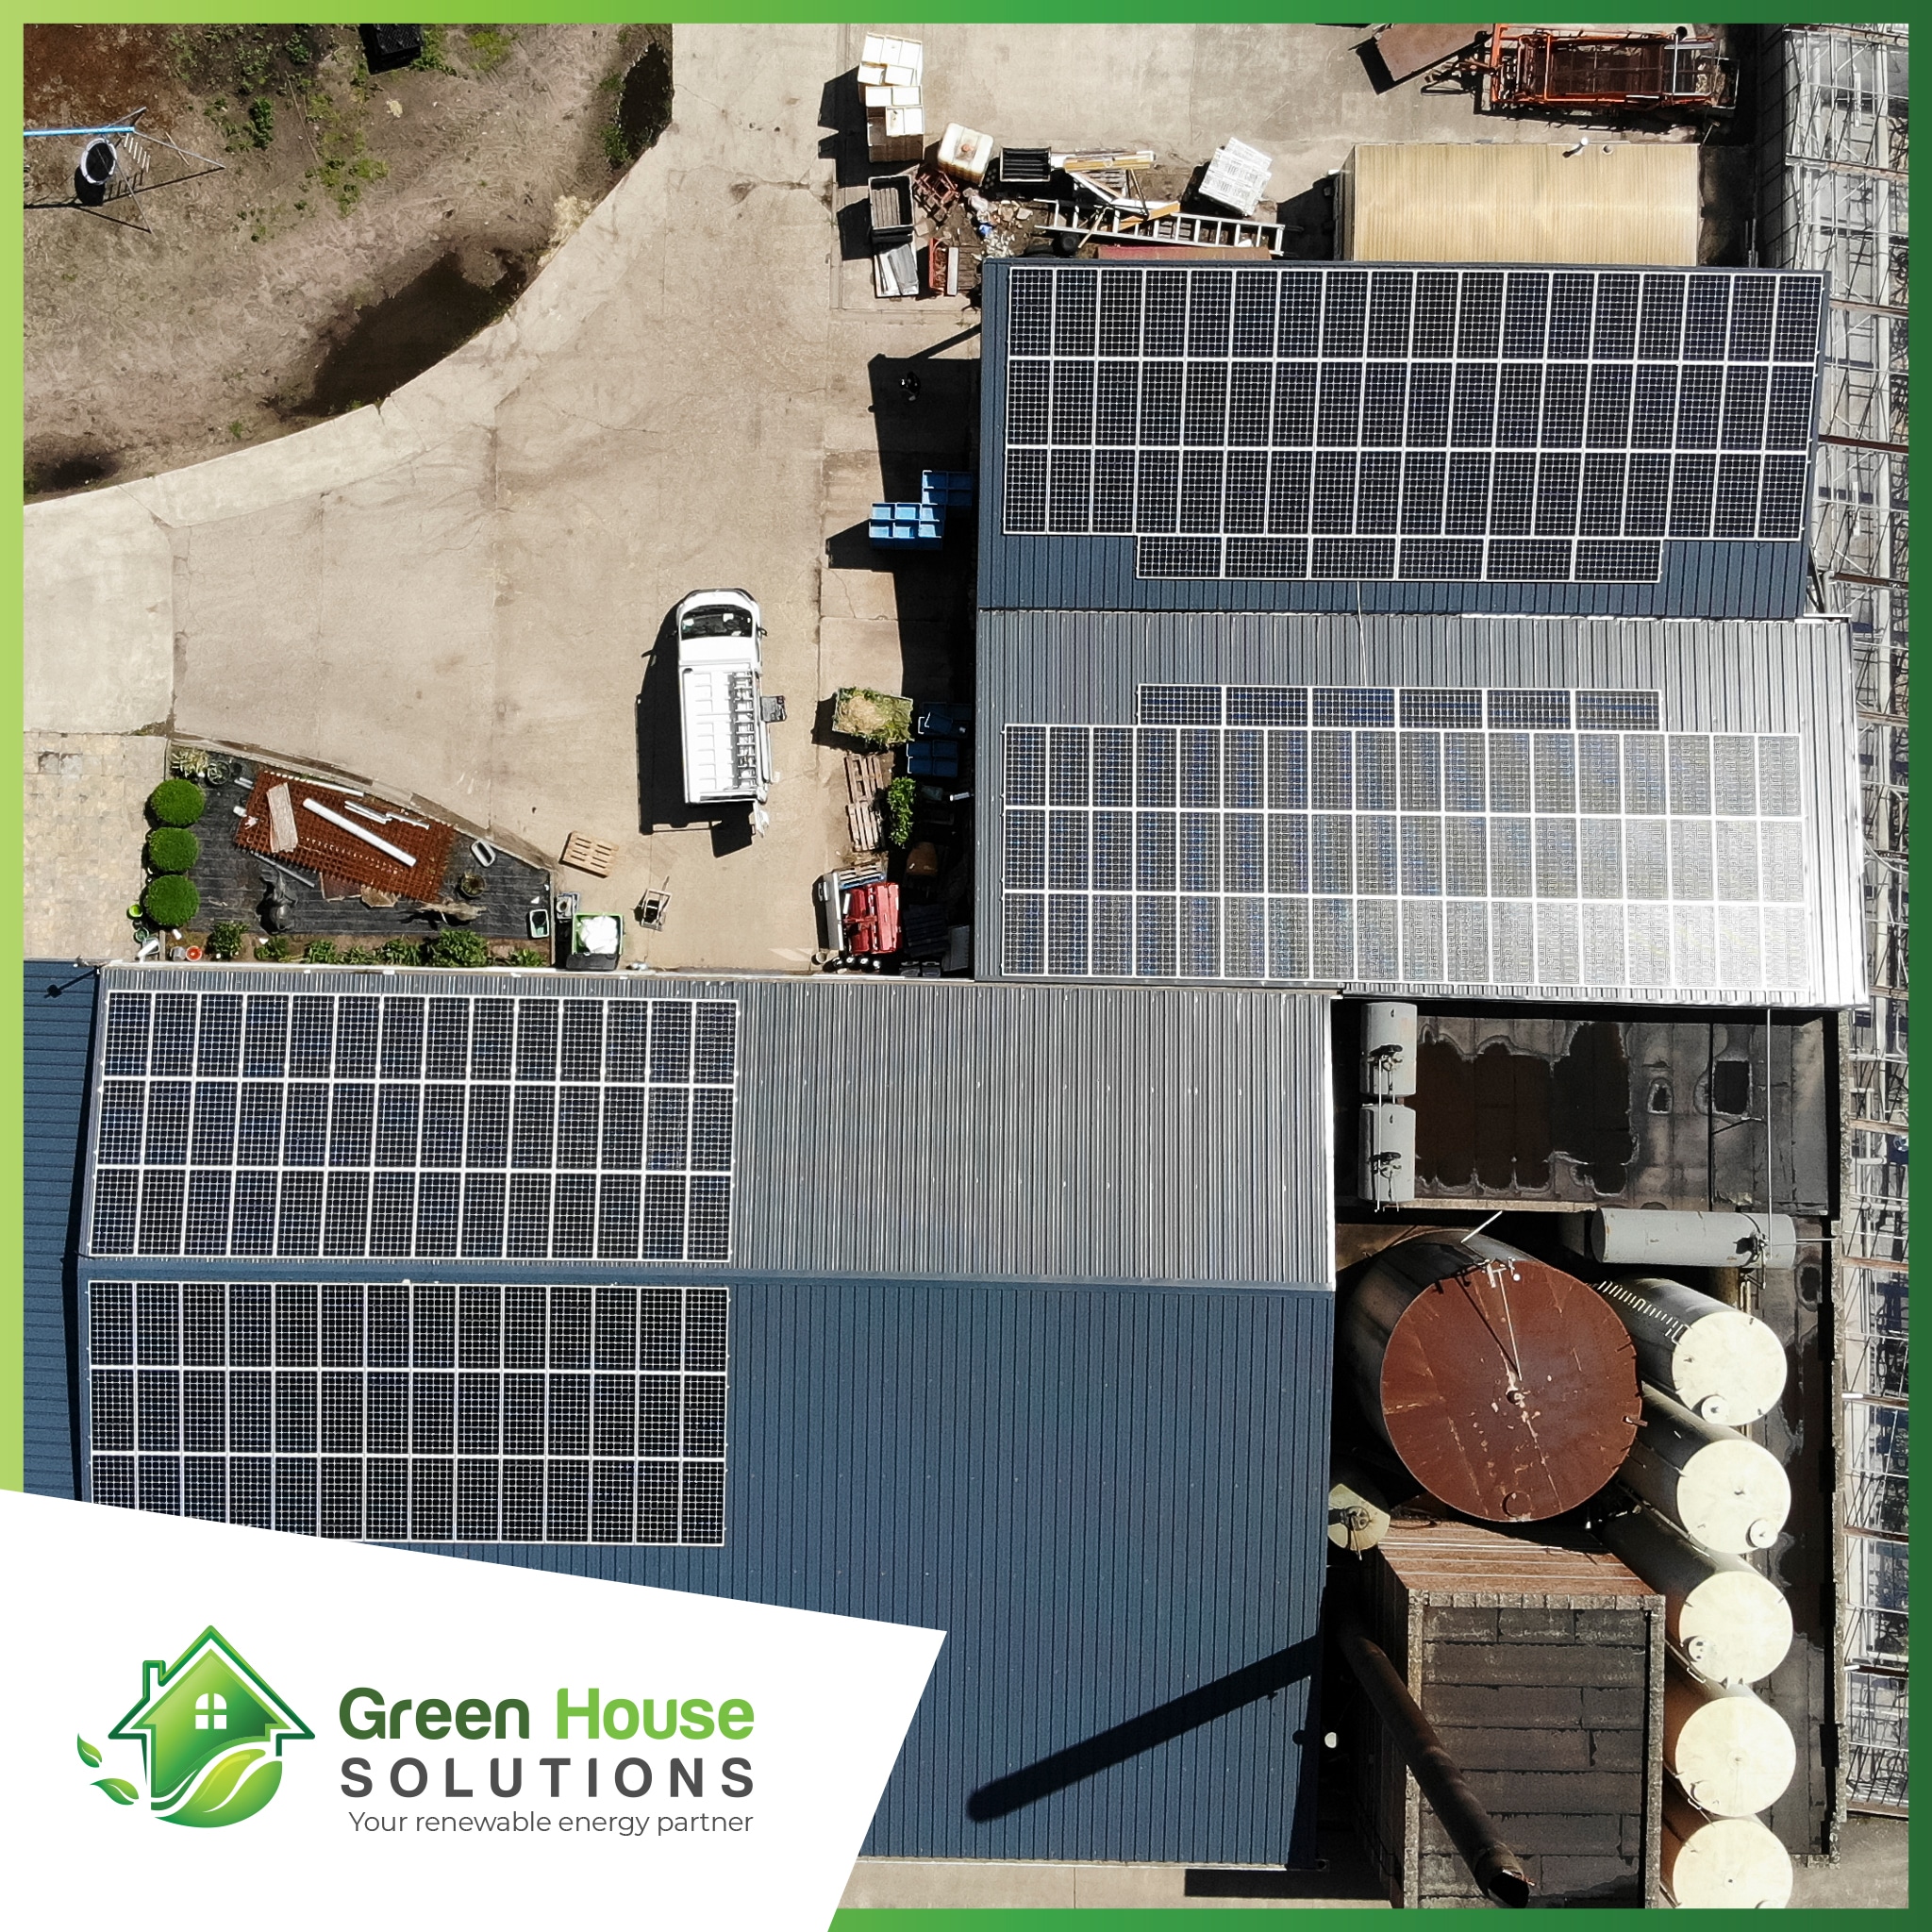 Green House Solutions zonnepanelen plaatsen installeren of kopen 00038